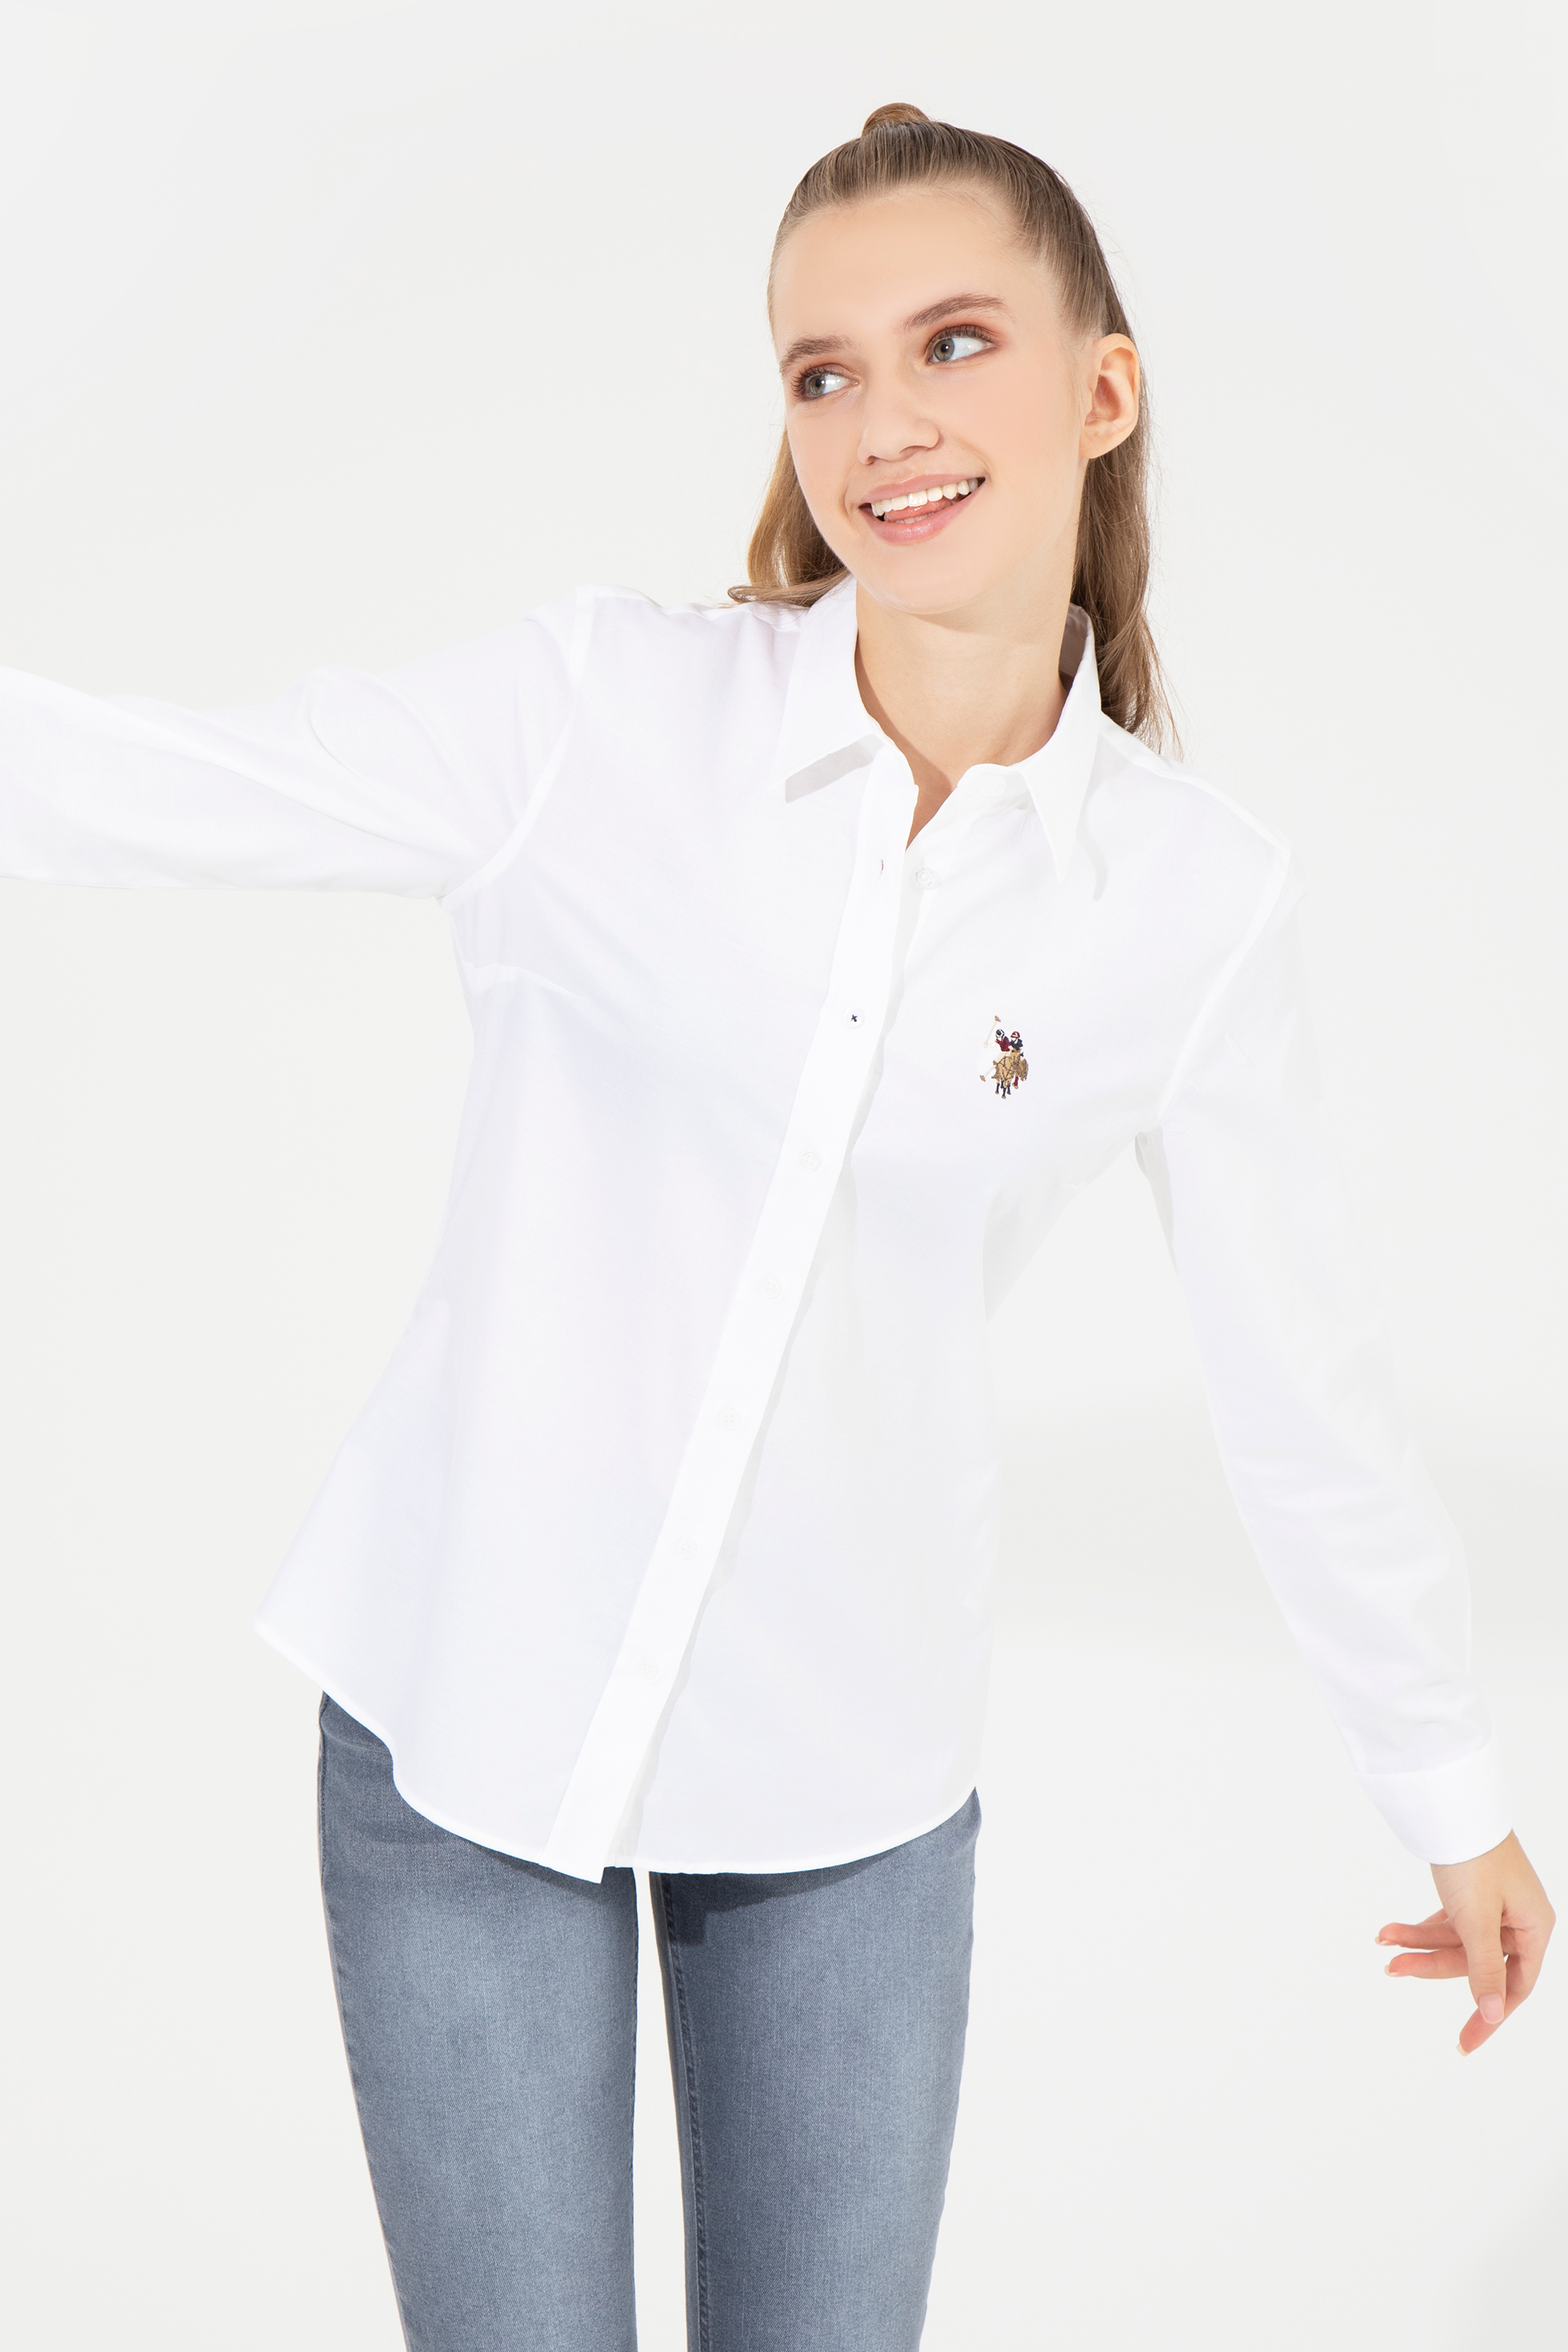 Рубашка женская U.S. Polo Assn. g082sz0040criscolor022k_vr013_32, белая, размер 40